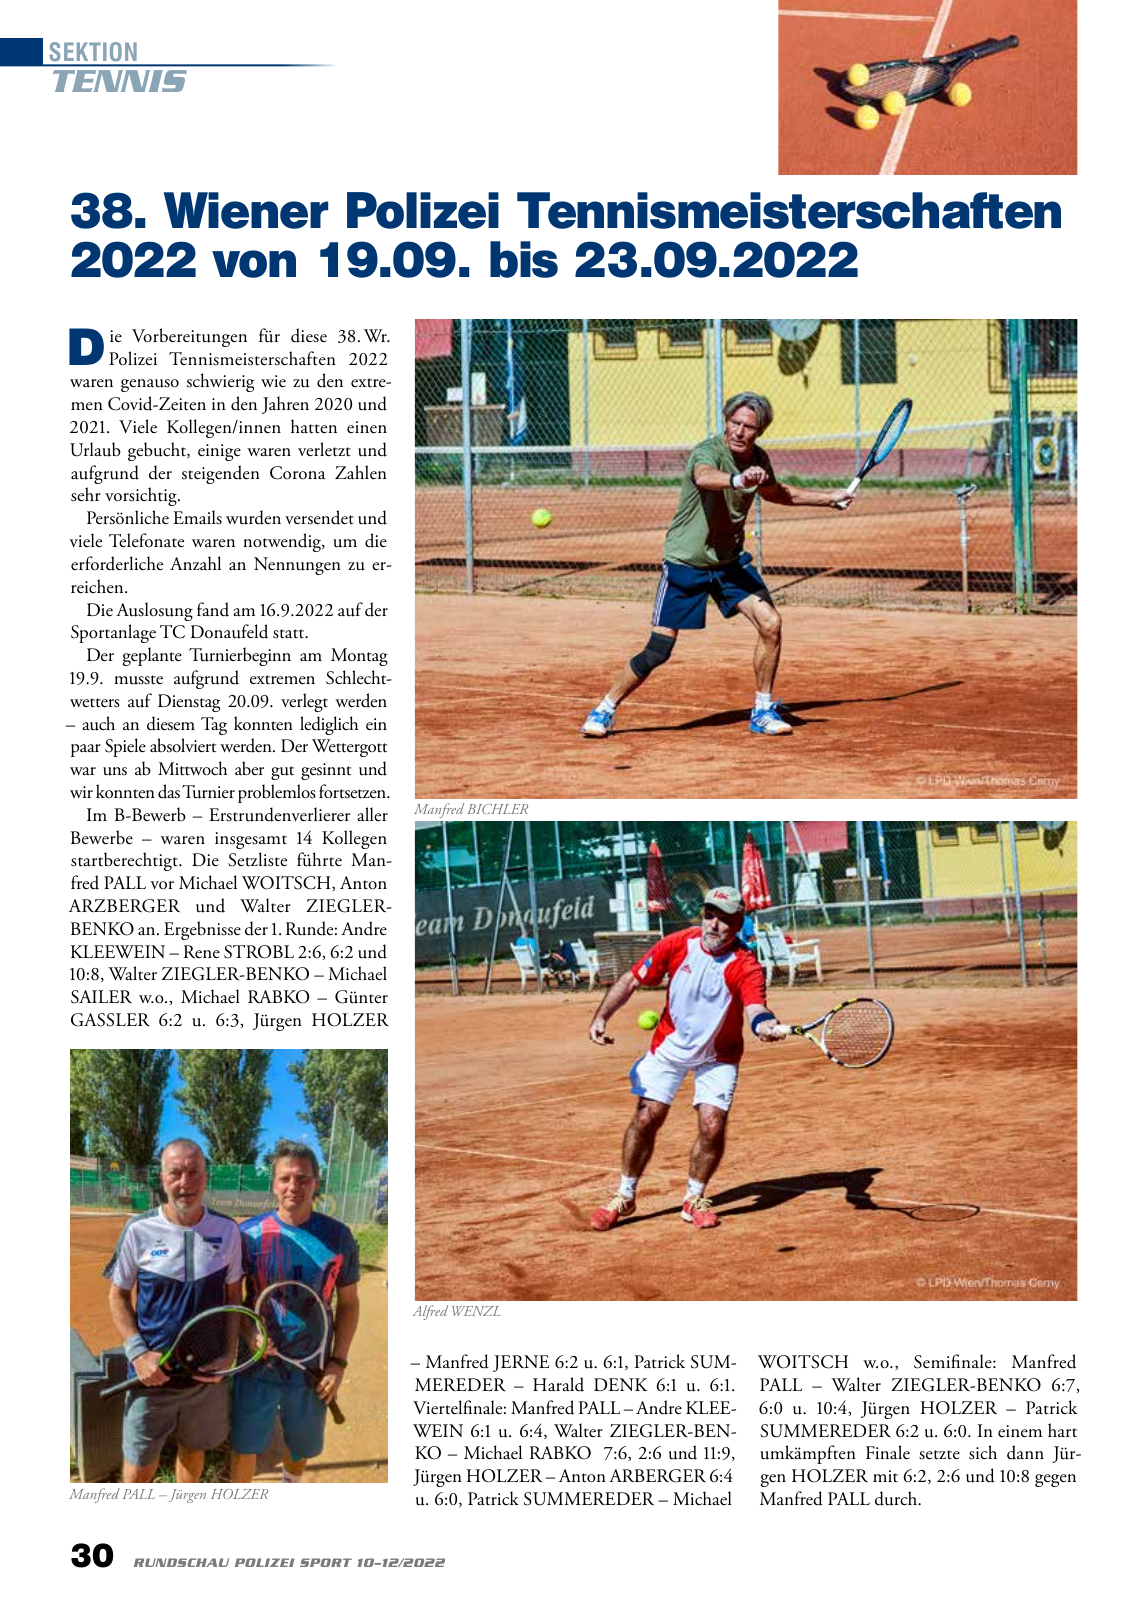 Vorschau Rundschau Polizei Sport 10-12/2022 Seite 30